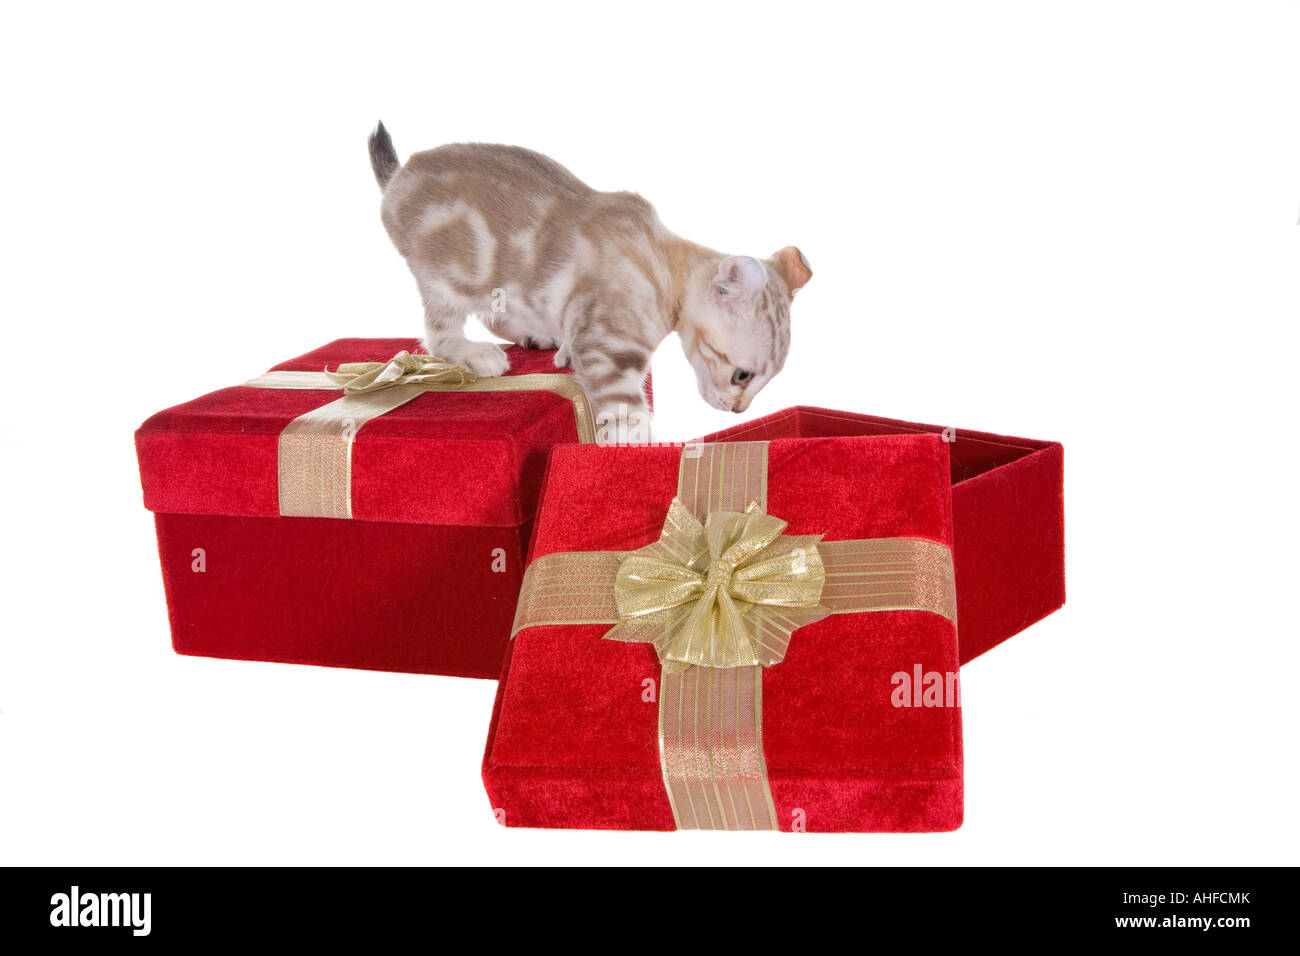 Highlander kitten in Christmas red velvet gift box isolated on white background Stock Photo